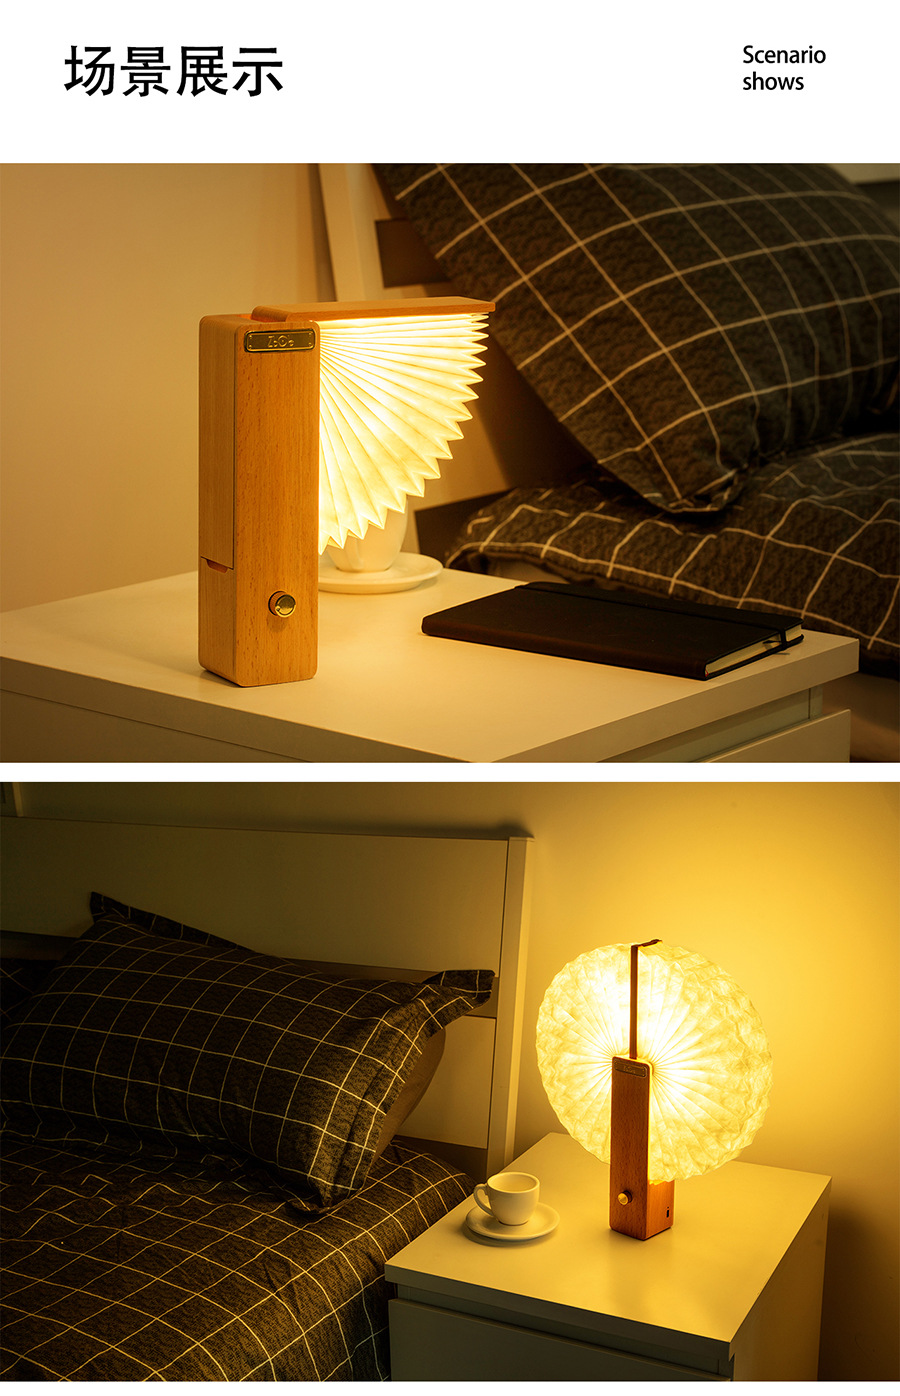 臺燈創意裝飾節日禮物復古簡約臥室床頭氛圍燈實木創意桌面臺燈